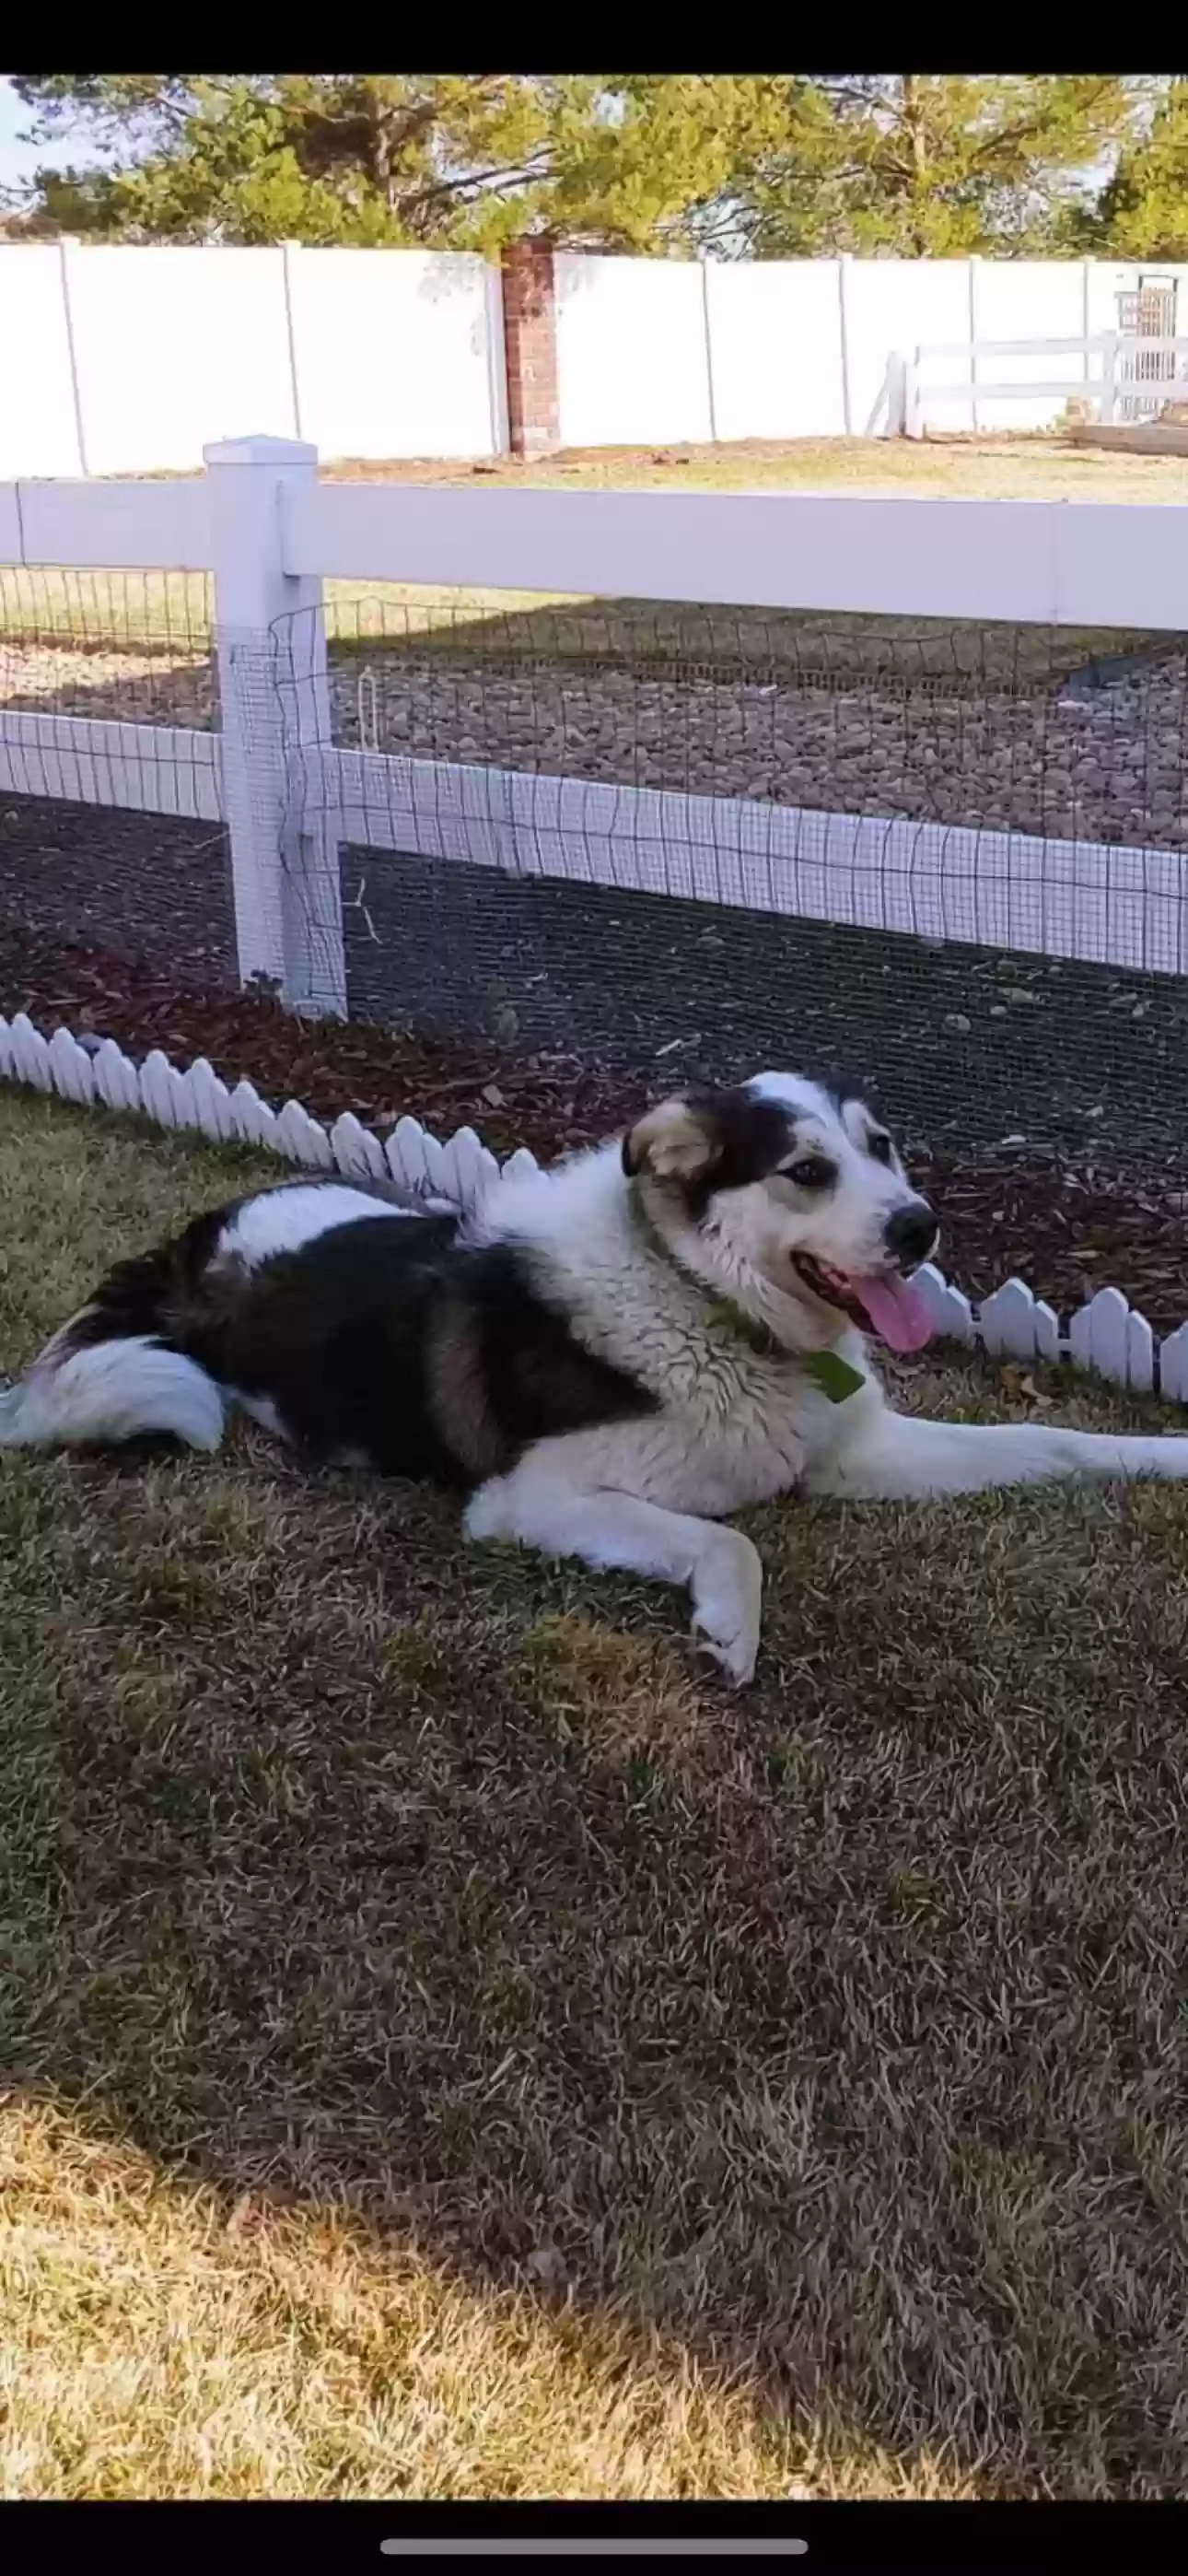 adoptable Dog in Loveland,CO named Diesel